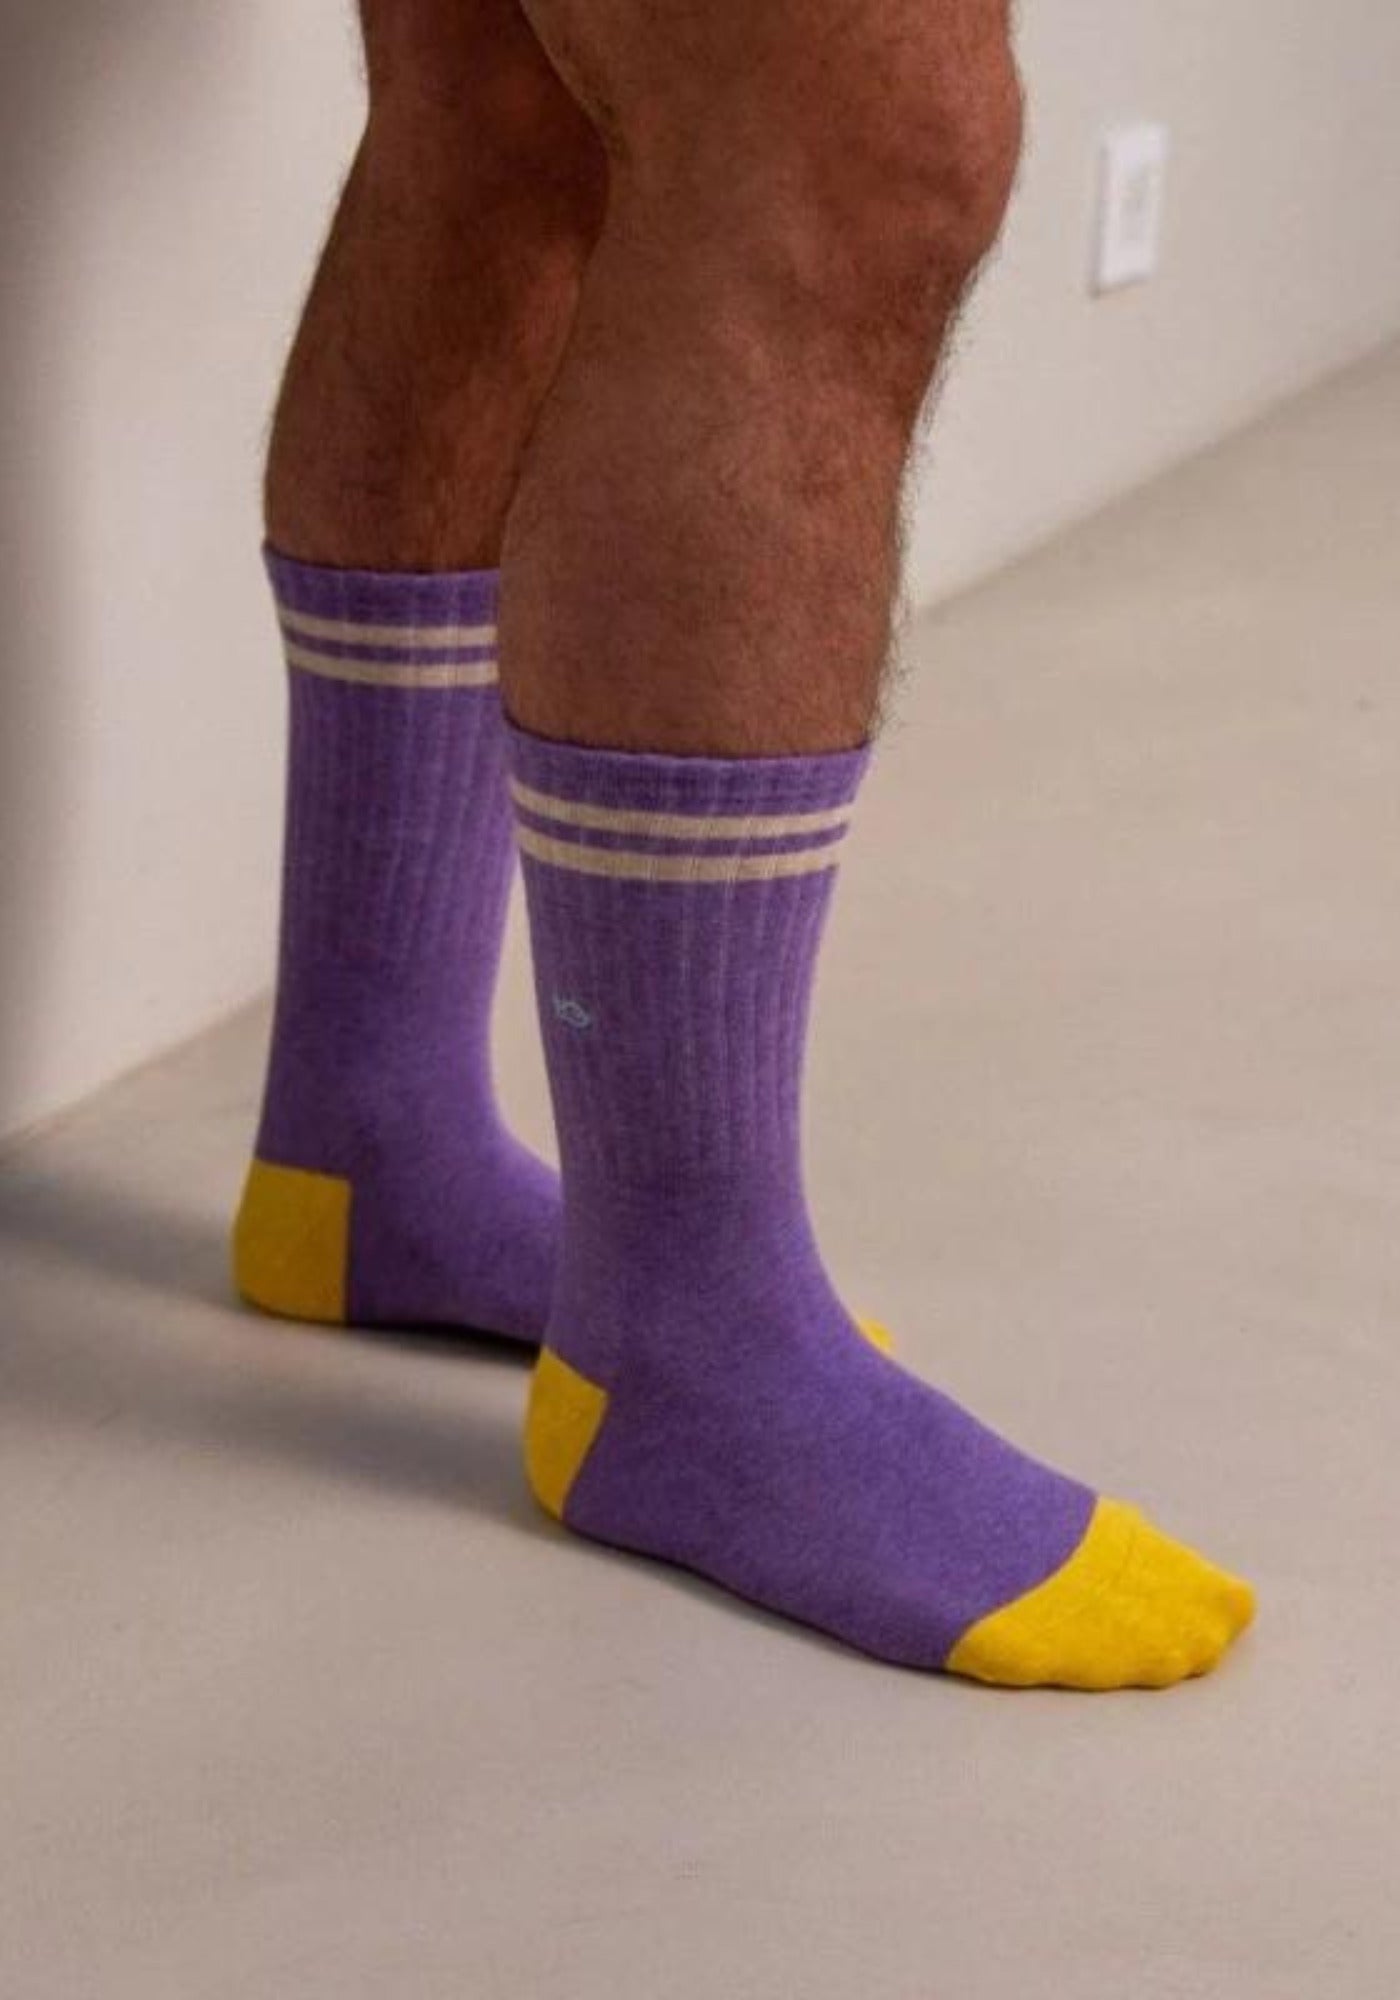 L'homme porte les chaussettes La Rétro violet chiné de chez Billybelt